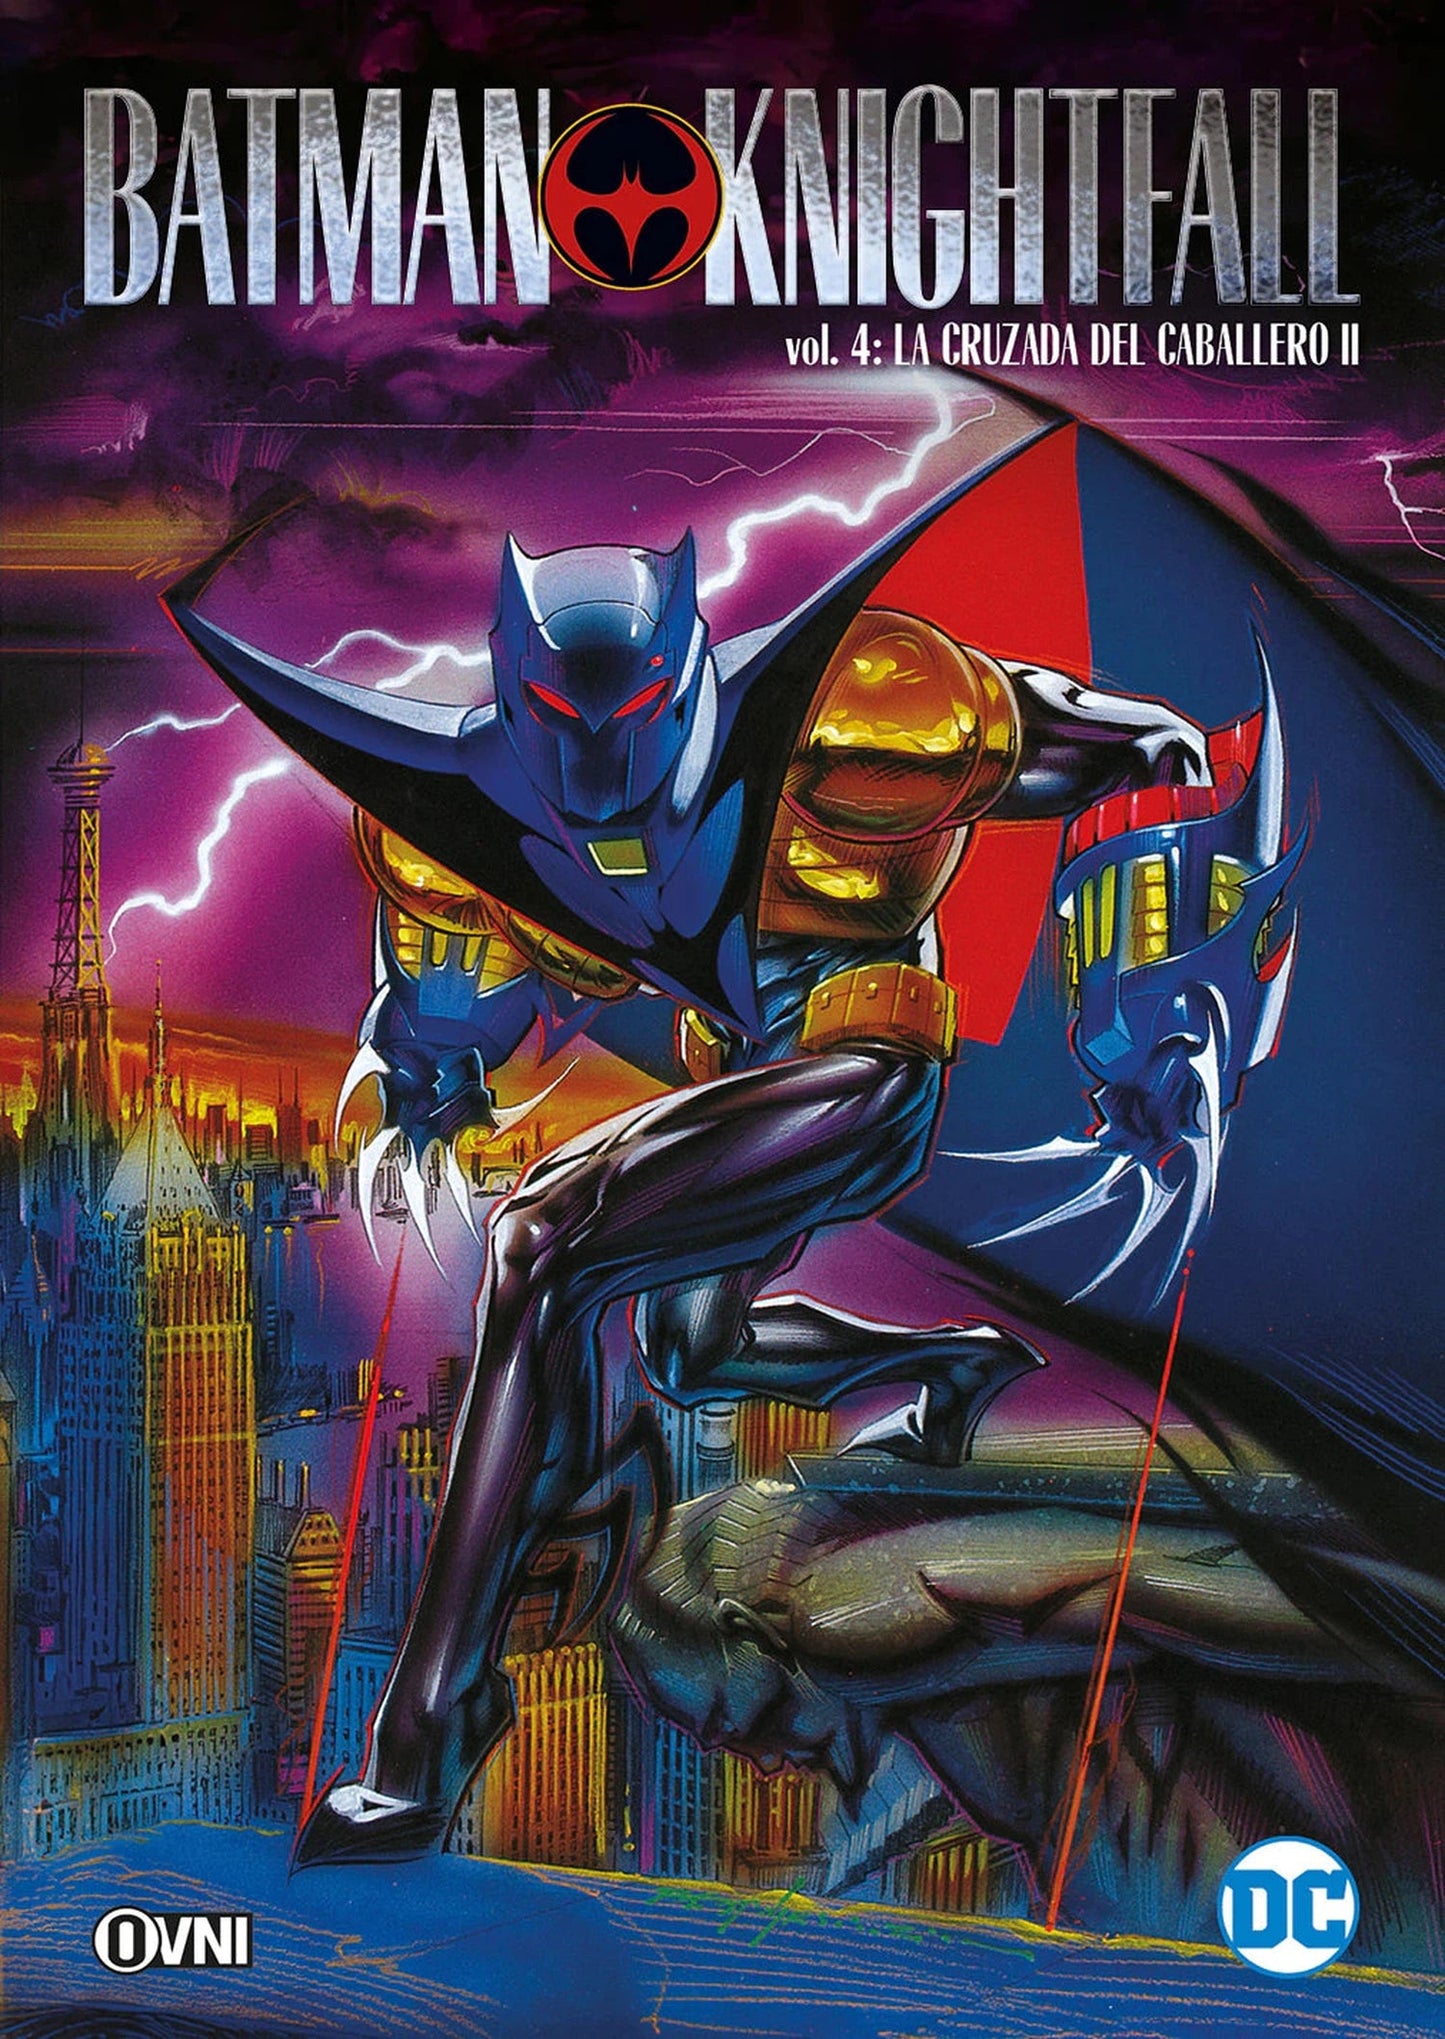 Batman: Knightfall Vol. 4: La Cruzada Del Caballero ll OVNI Press ENcuadrocomics